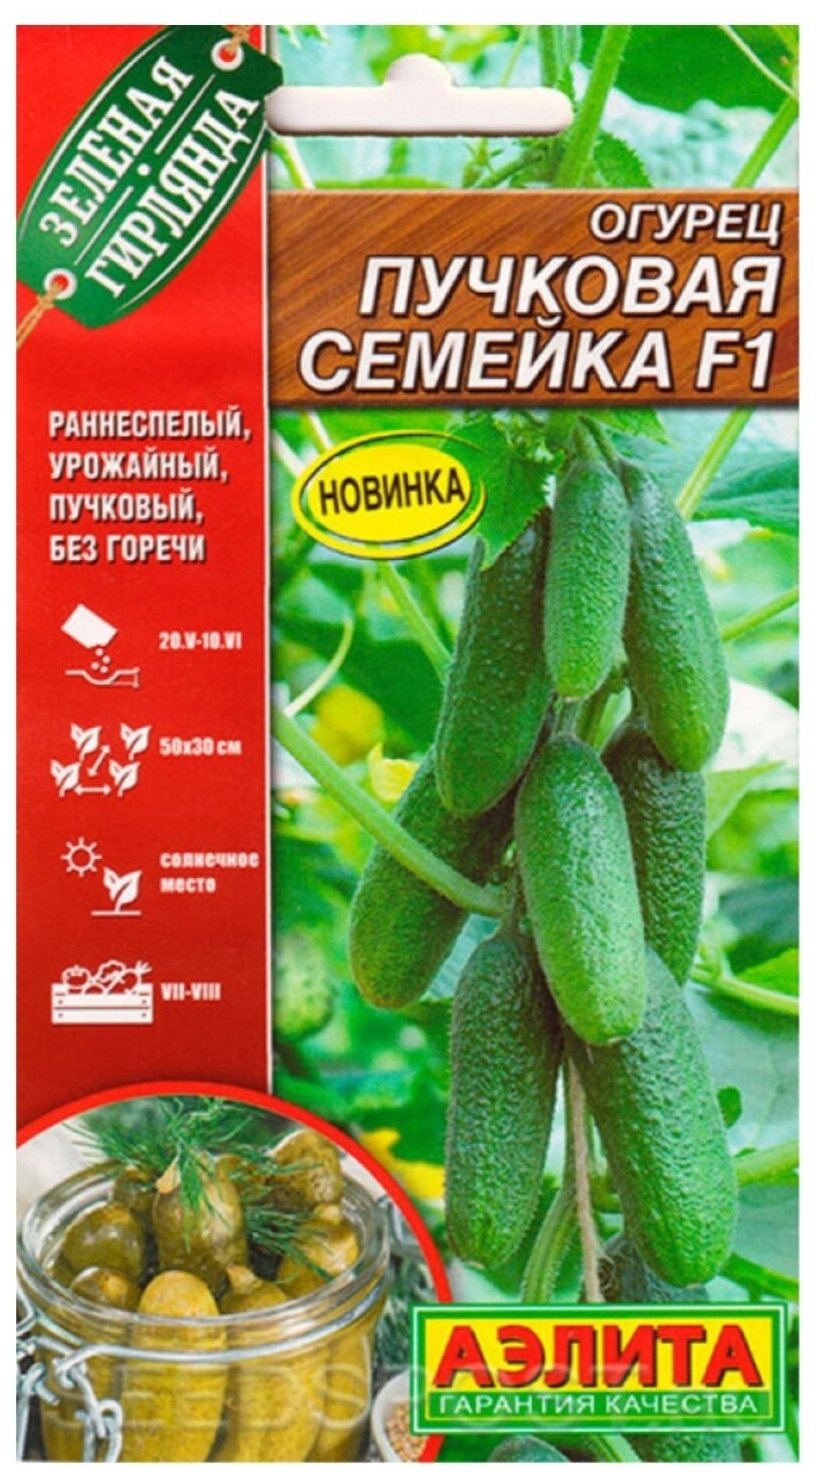 Огурец Пучковая семейка F1 (семян 10шт.)